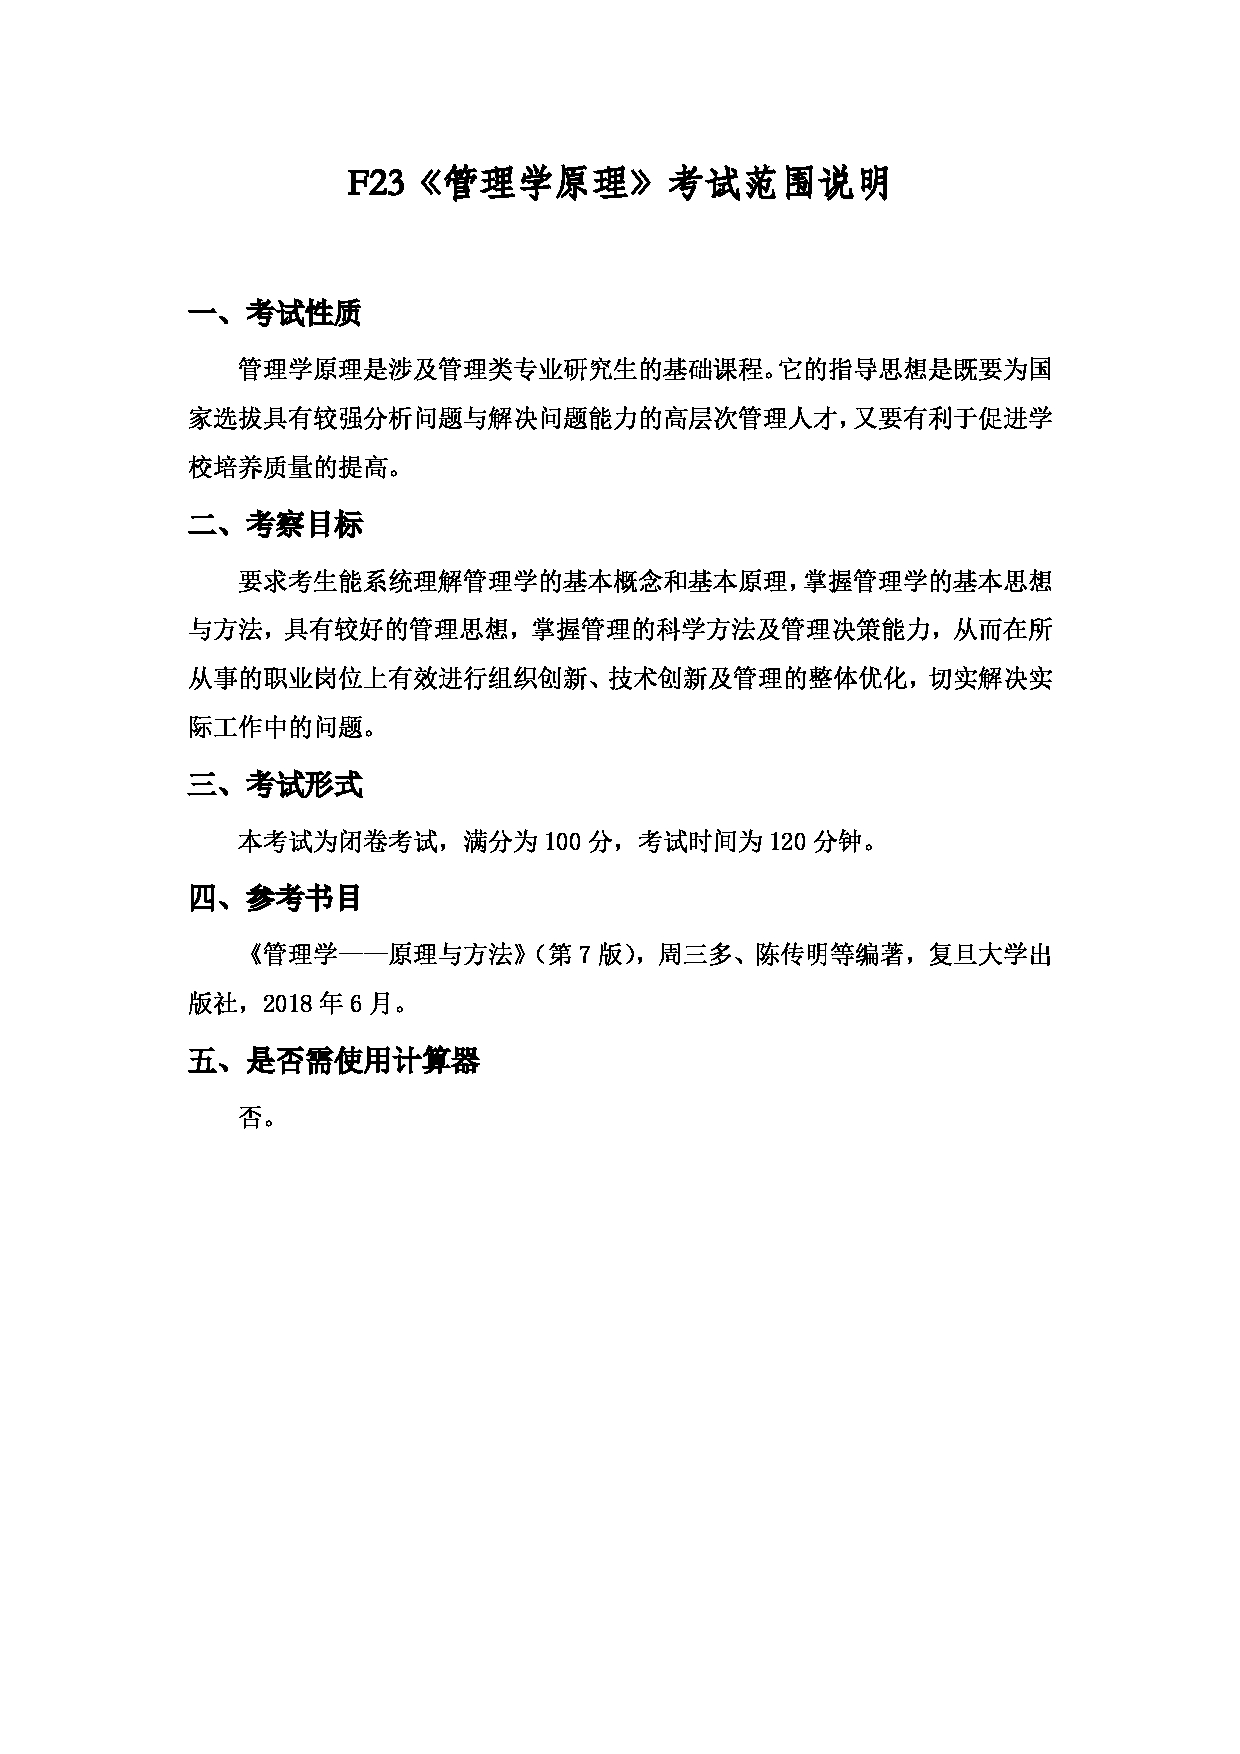 2022考研大纲：上海海洋大学2022年考研自命题科目 F23管理学原理 考试大纲第1页